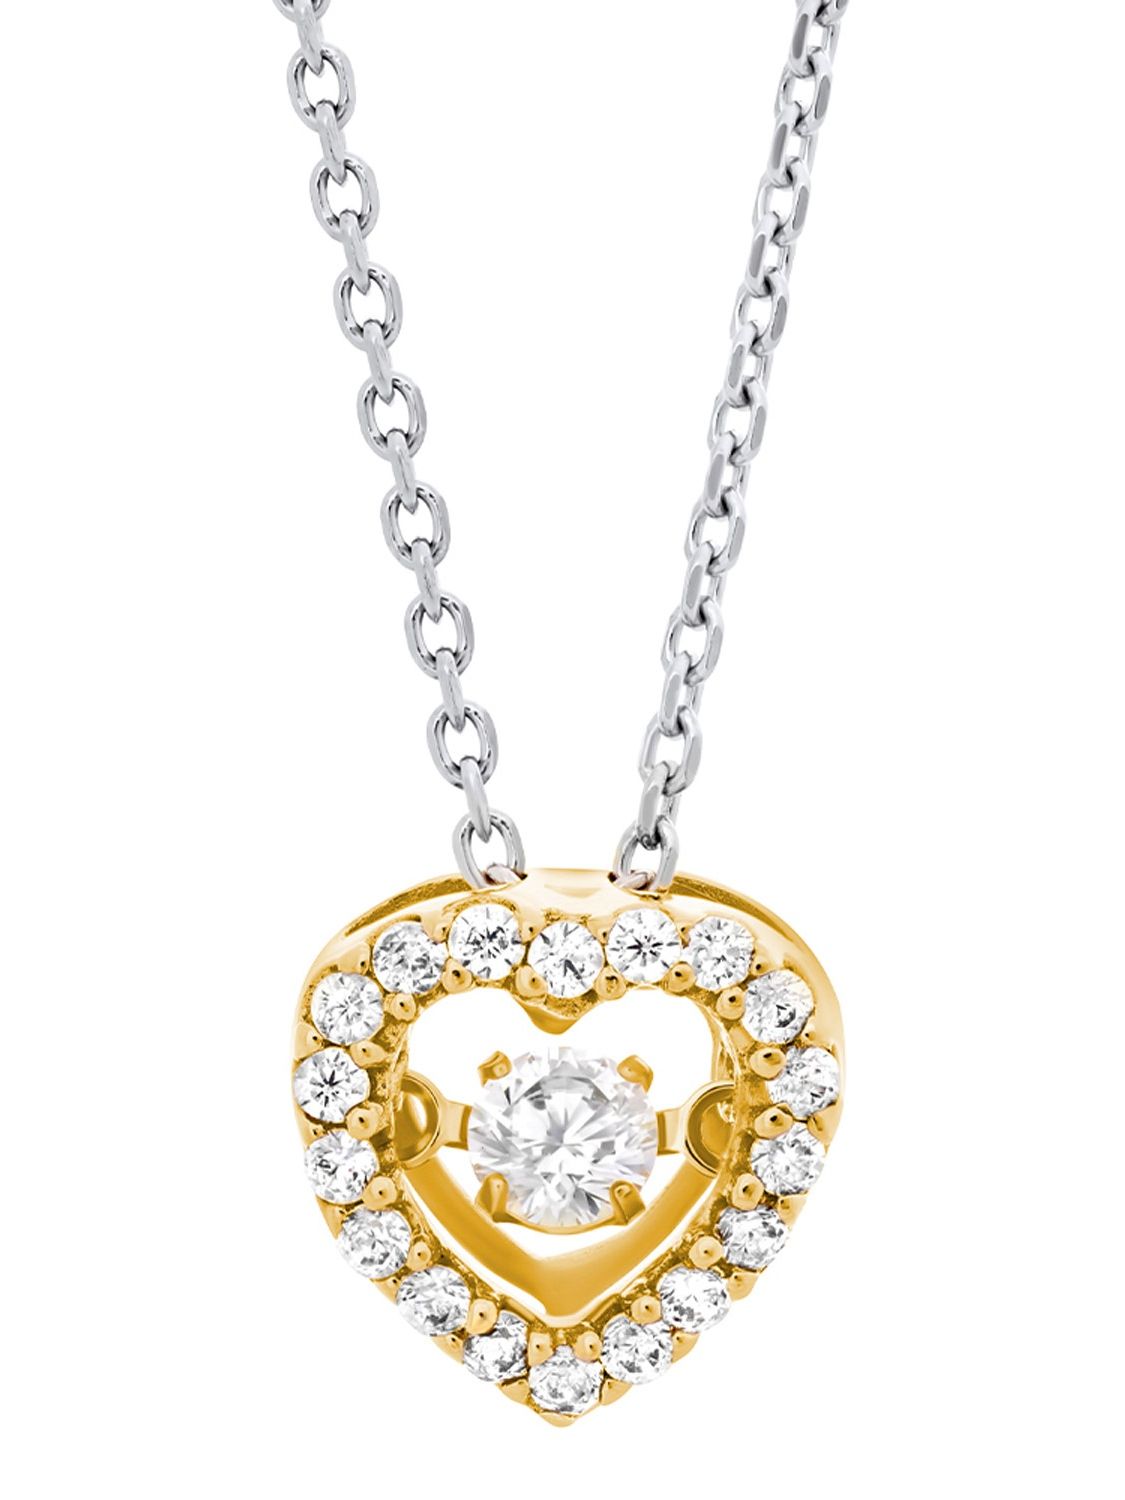 Julie Julsen Ladies' Necklace Dancing Stone Heart Gold Tone JJDNE0777.3 •  uhrcenter